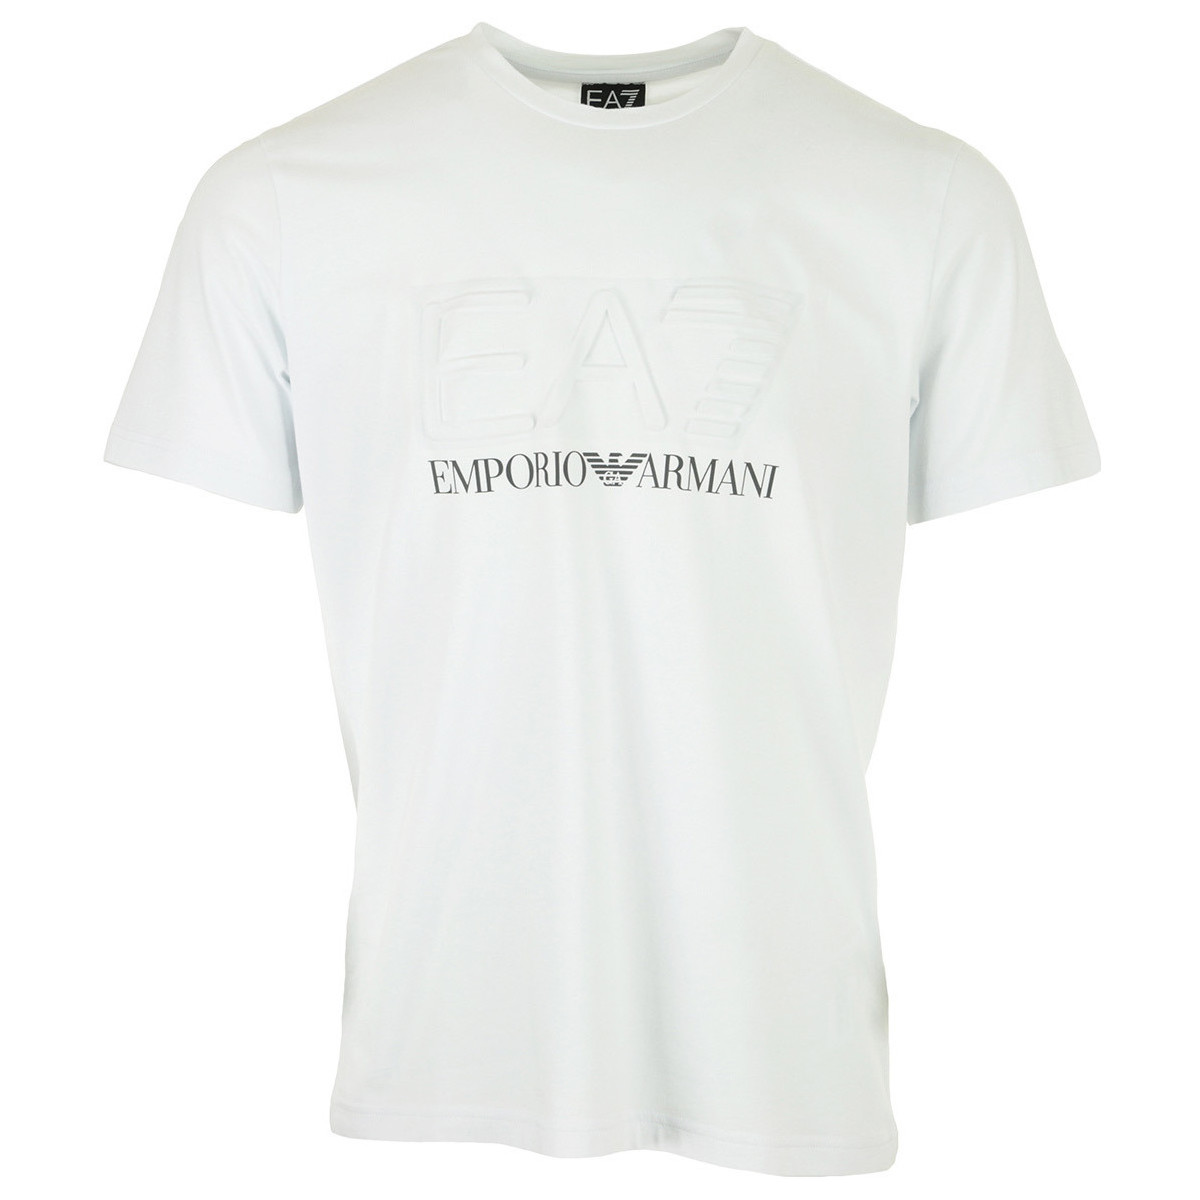 tekstylia Męskie T-shirty z krótkim rękawem Emporio Armani Tee Biały